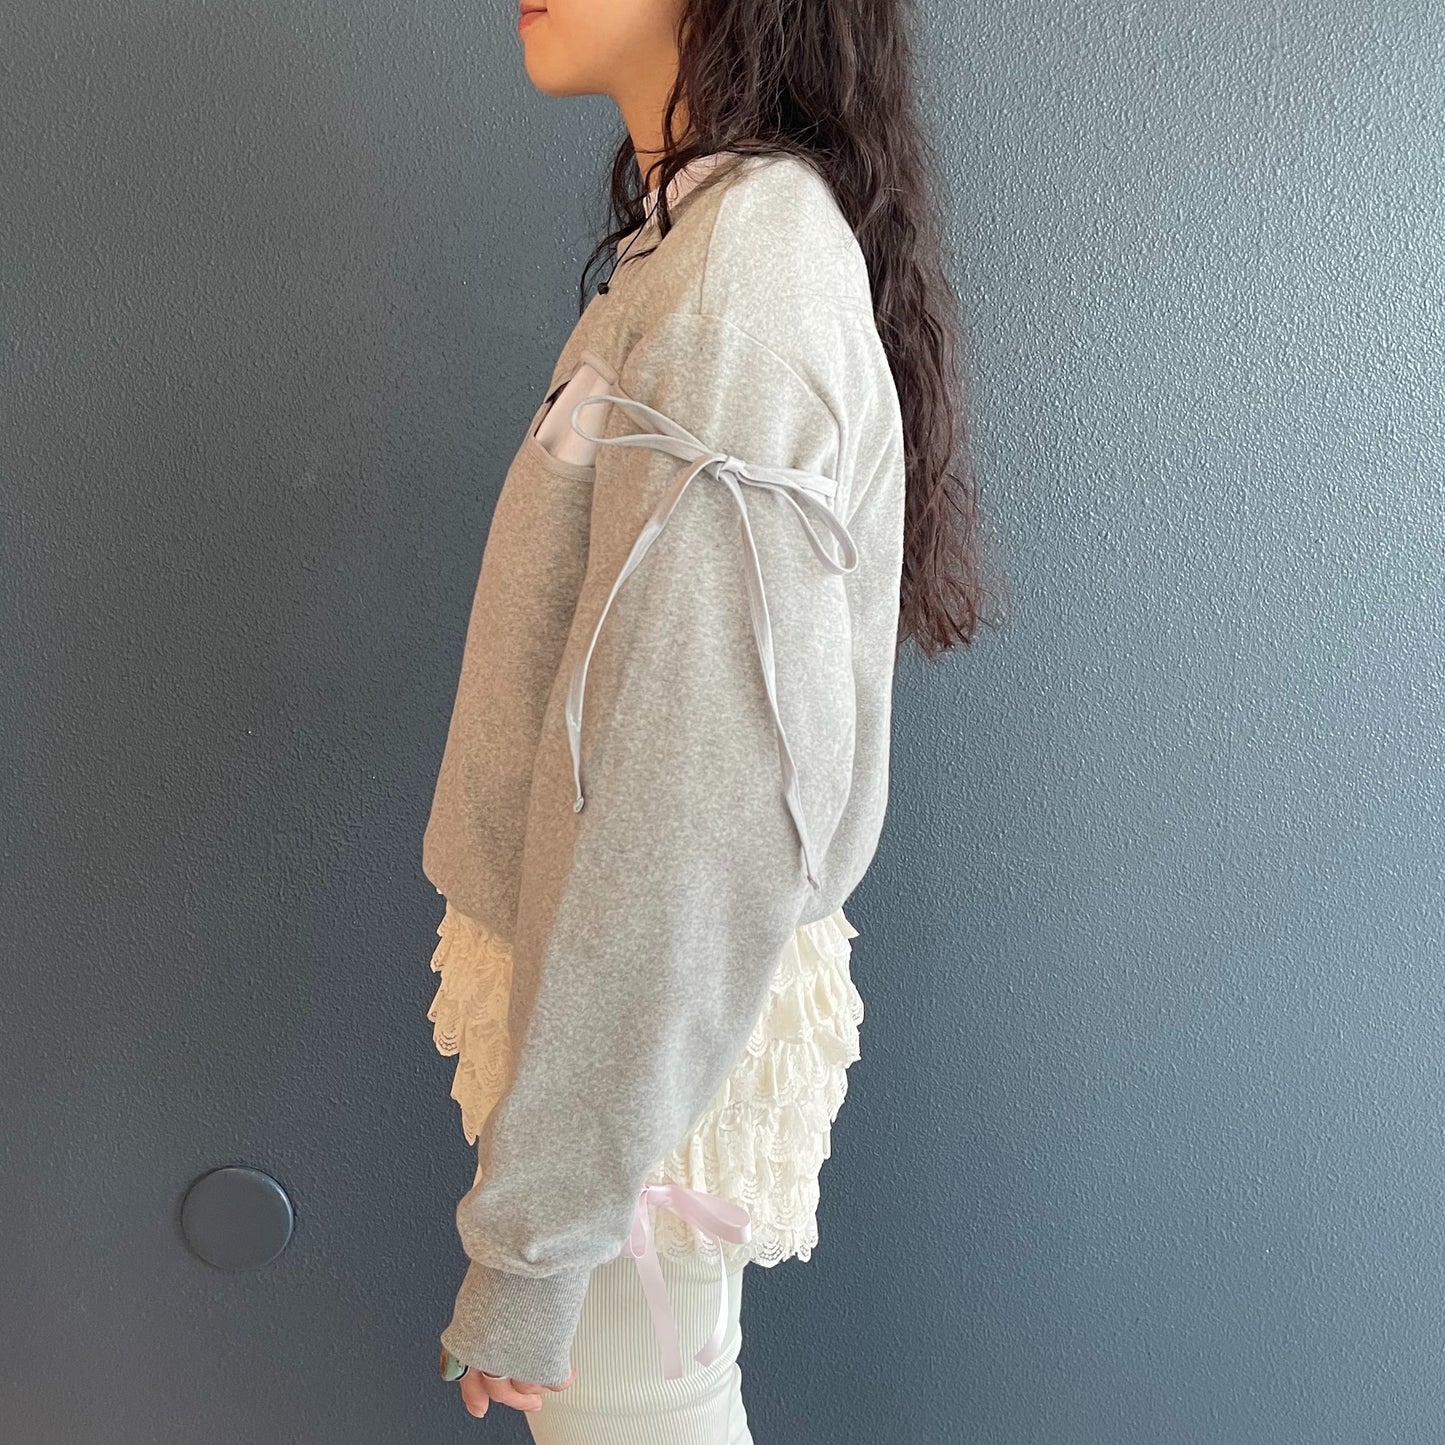 Mari ballerina sweatshirt / Gray / カッティングスウェット